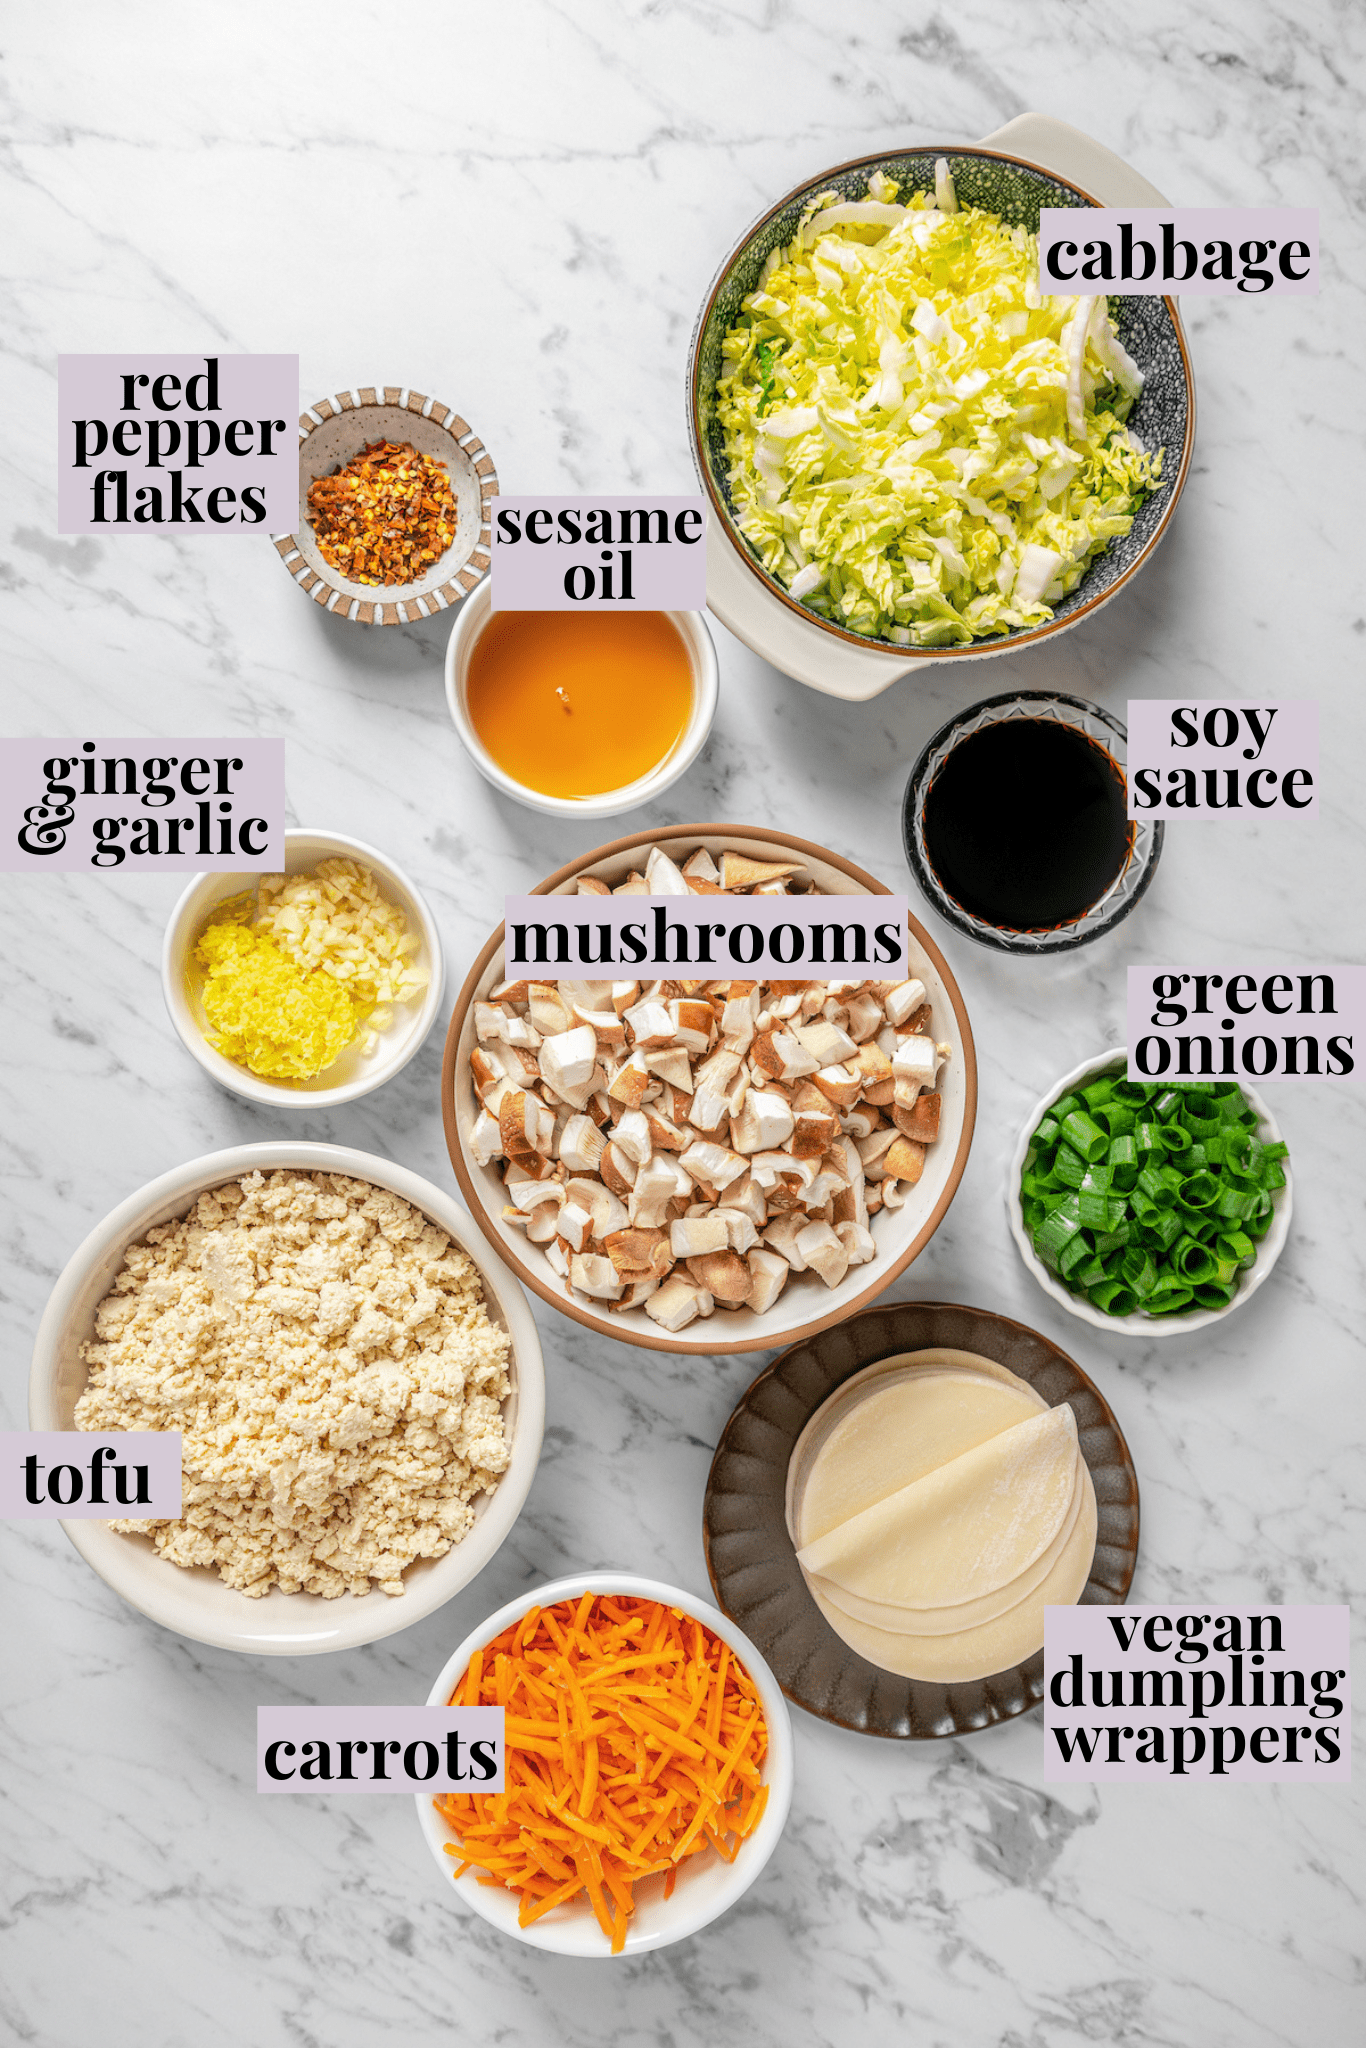 Overhead view of ingredients for vegan dumplings